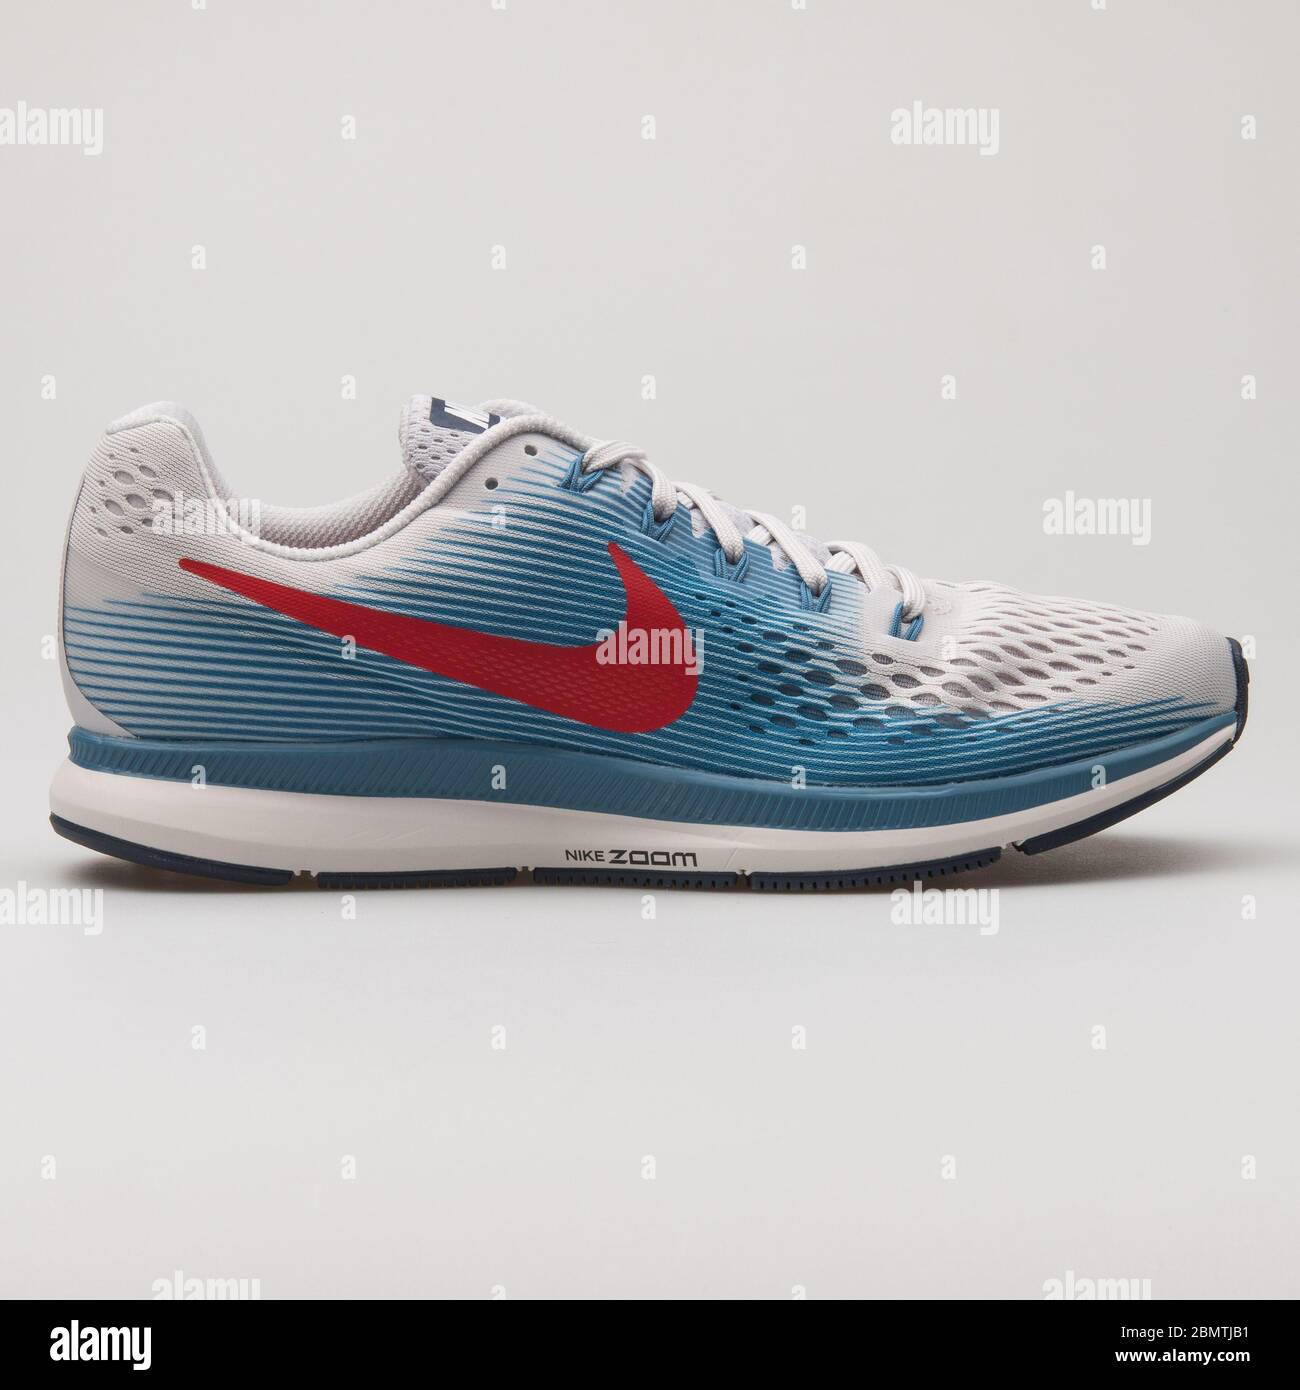 VIENNE, AUTRICHE - 14 FÉVRIER 2018 : sneaker Nike Air Zoom Pegasus 34  blanche, bleue et rouge sur fond blanc Photo Stock - Alamy